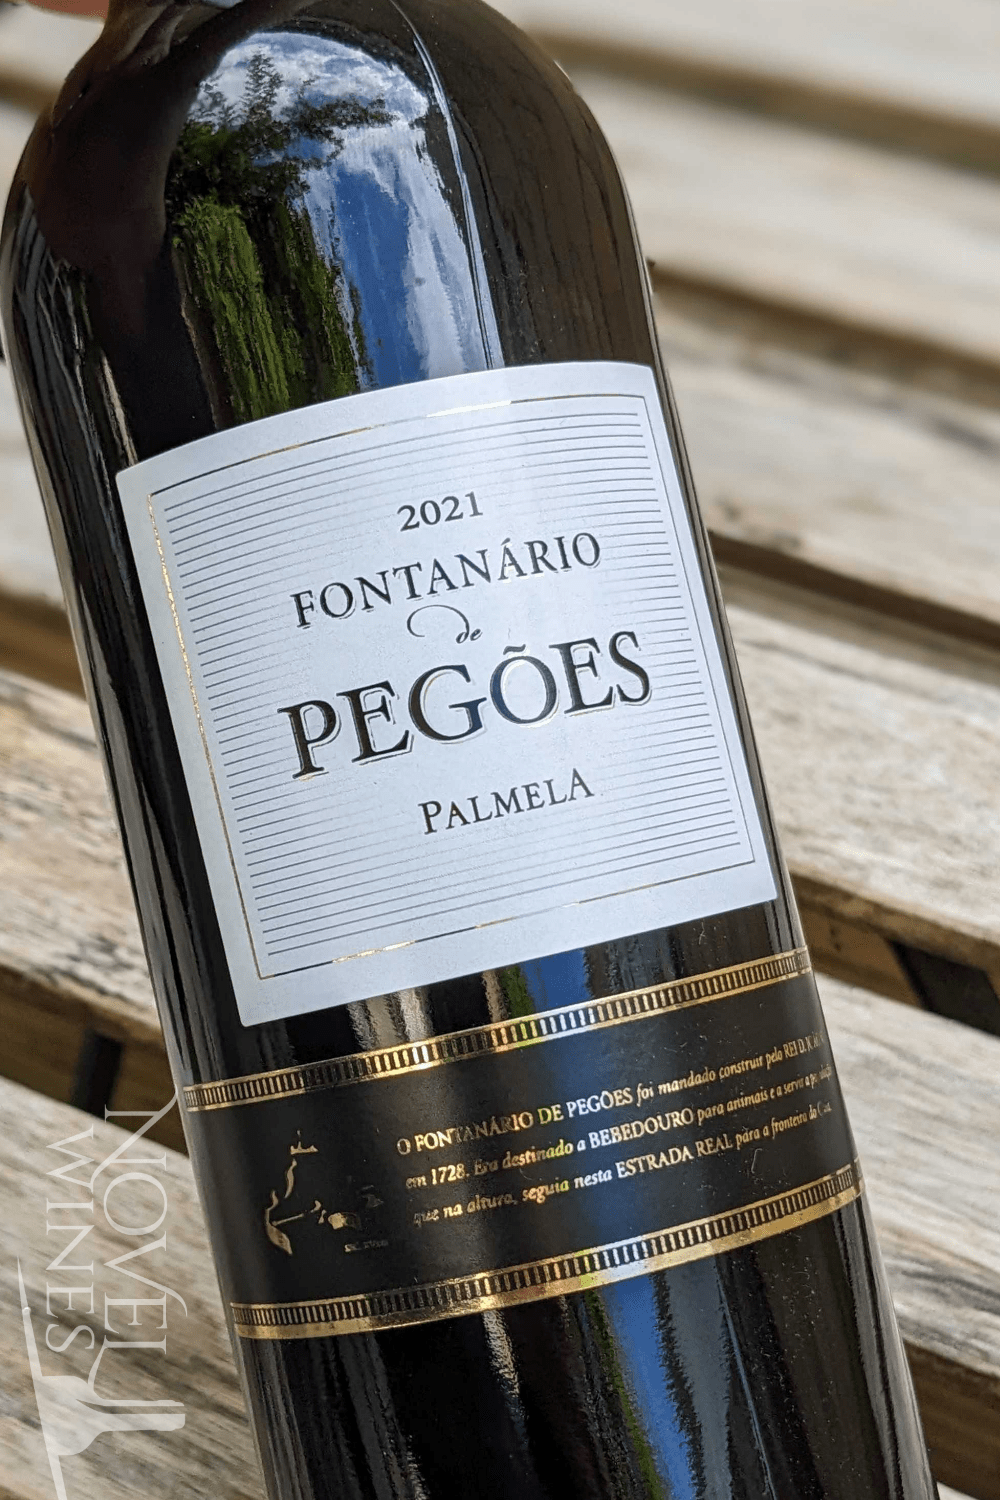 Adega de Pegoes Red Wine Fontanario de Pegoes 'Palmela' Tinto 2021, Portugal